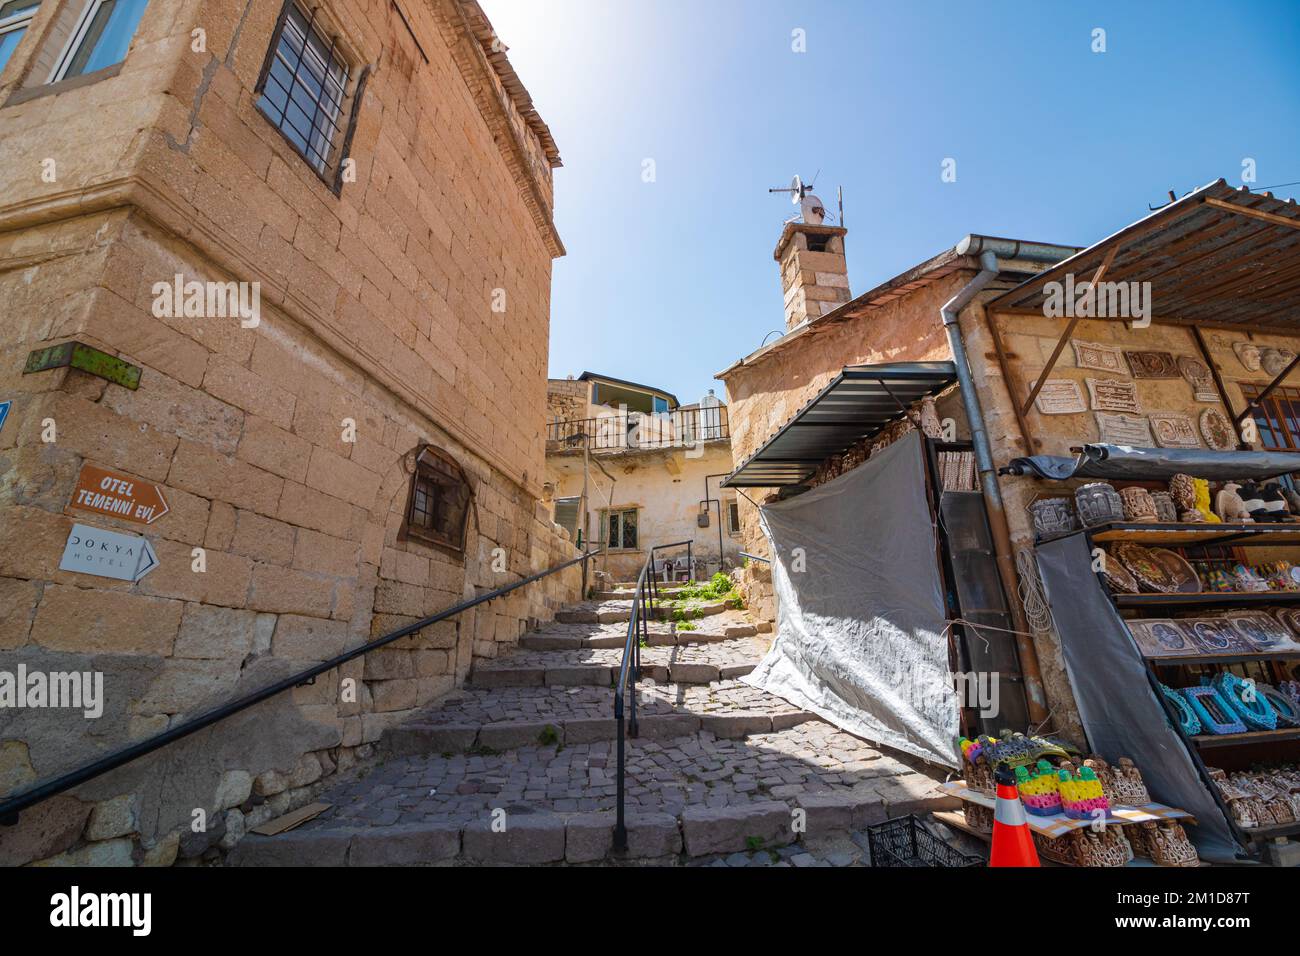 Une rue et des bâtiments historiques à Urgup Cappadoce. Voyage à Cappadoce photo de fond. Nevsehir Turkiye - 7.2.2021 Banque D'Images